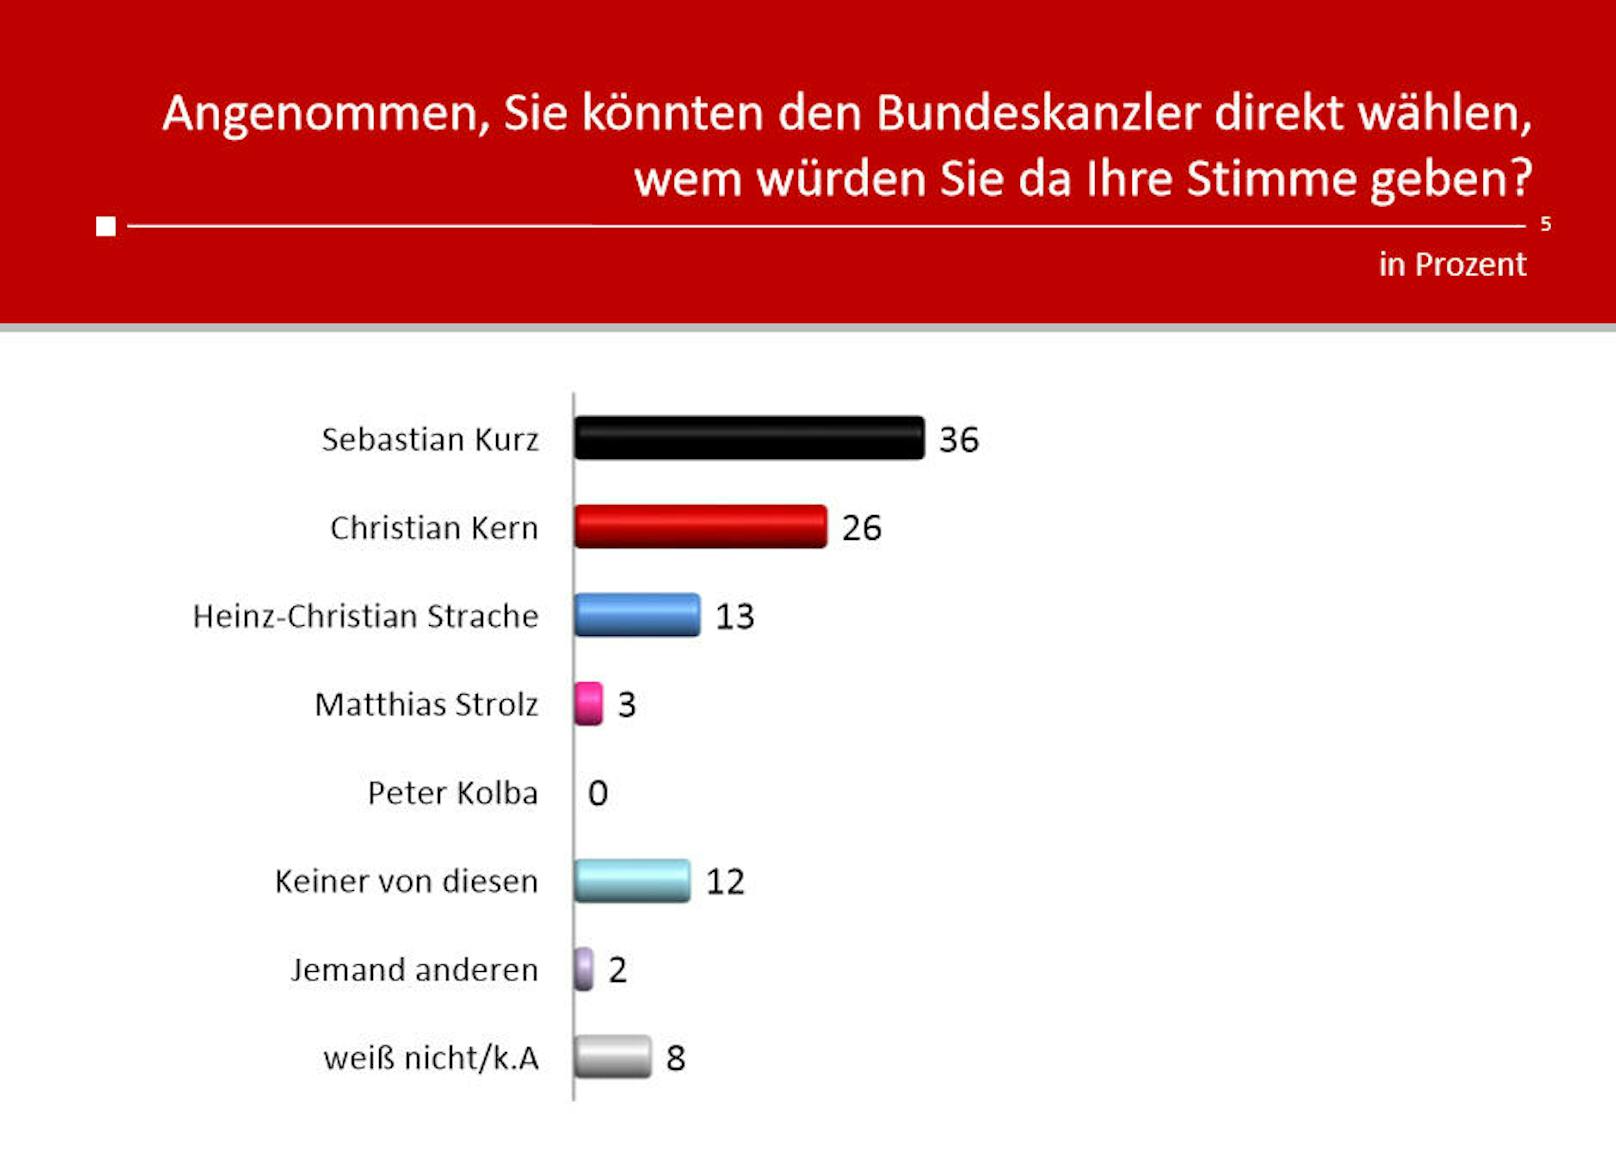 Ungebrochen ist die Popularität von Kanzler Sebastian Kurz, 36 Prozent würden in der Direktwahl für ihn stimmen.